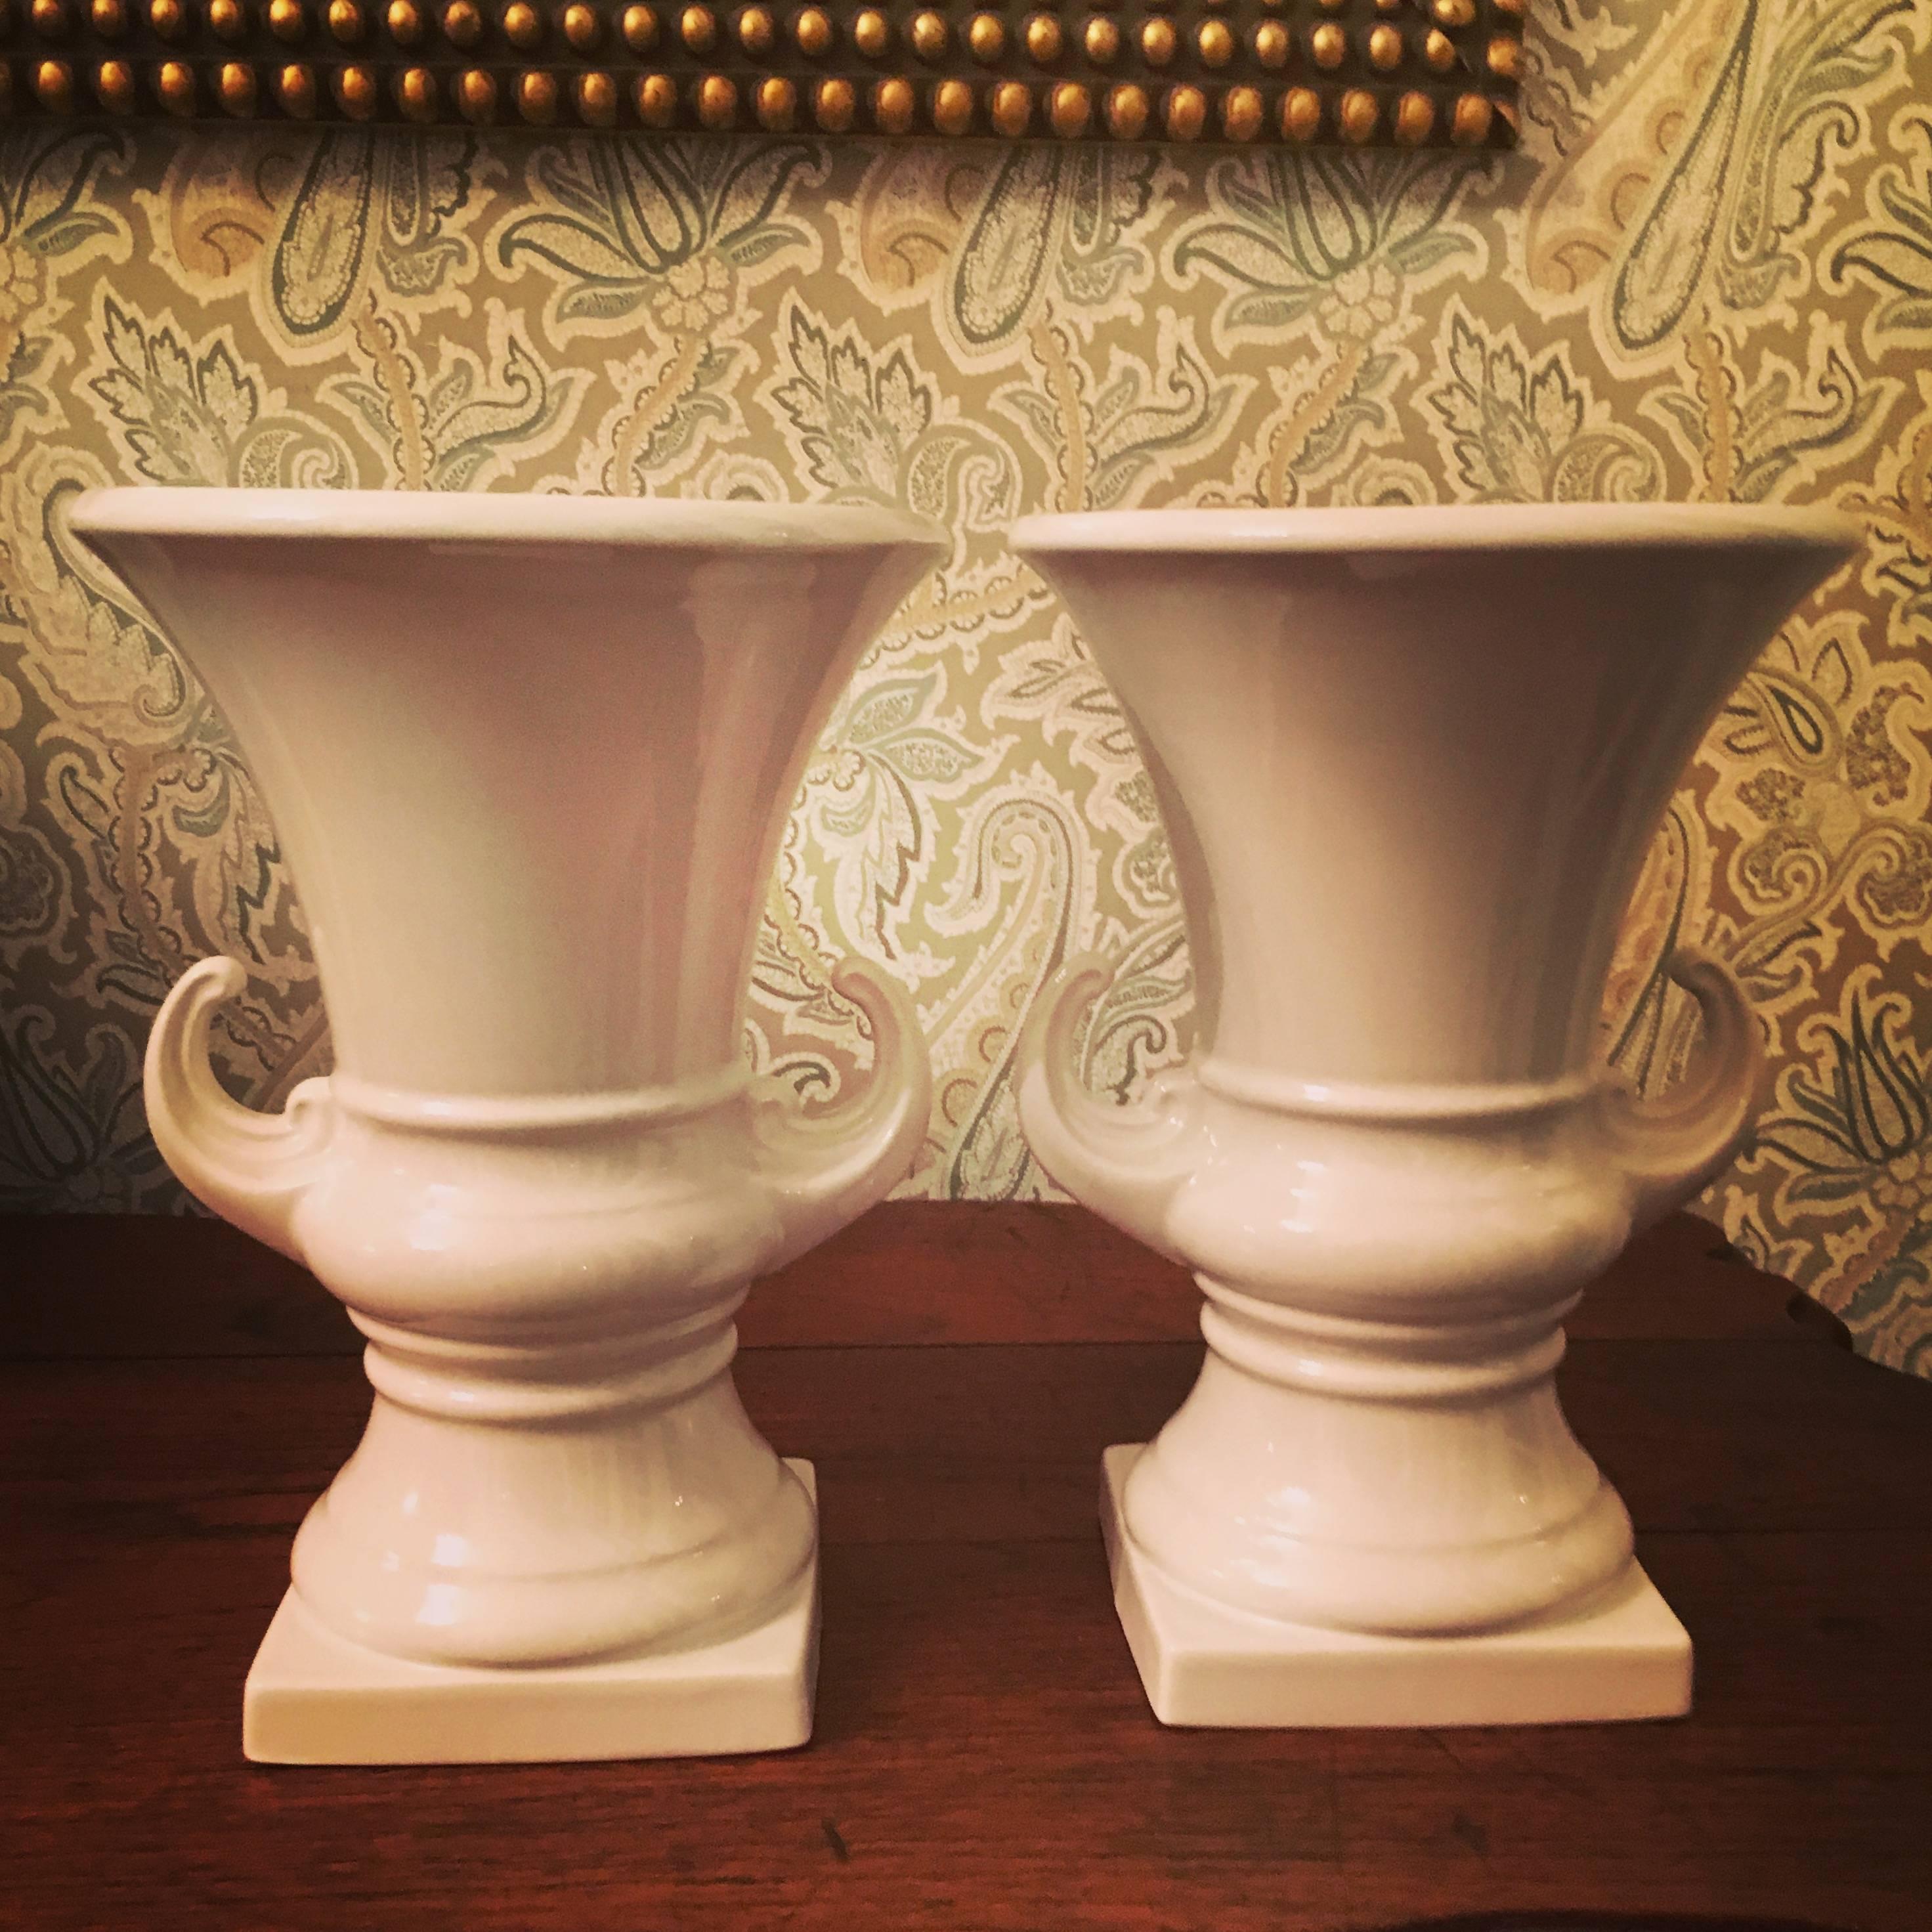 ceramic urns and vases